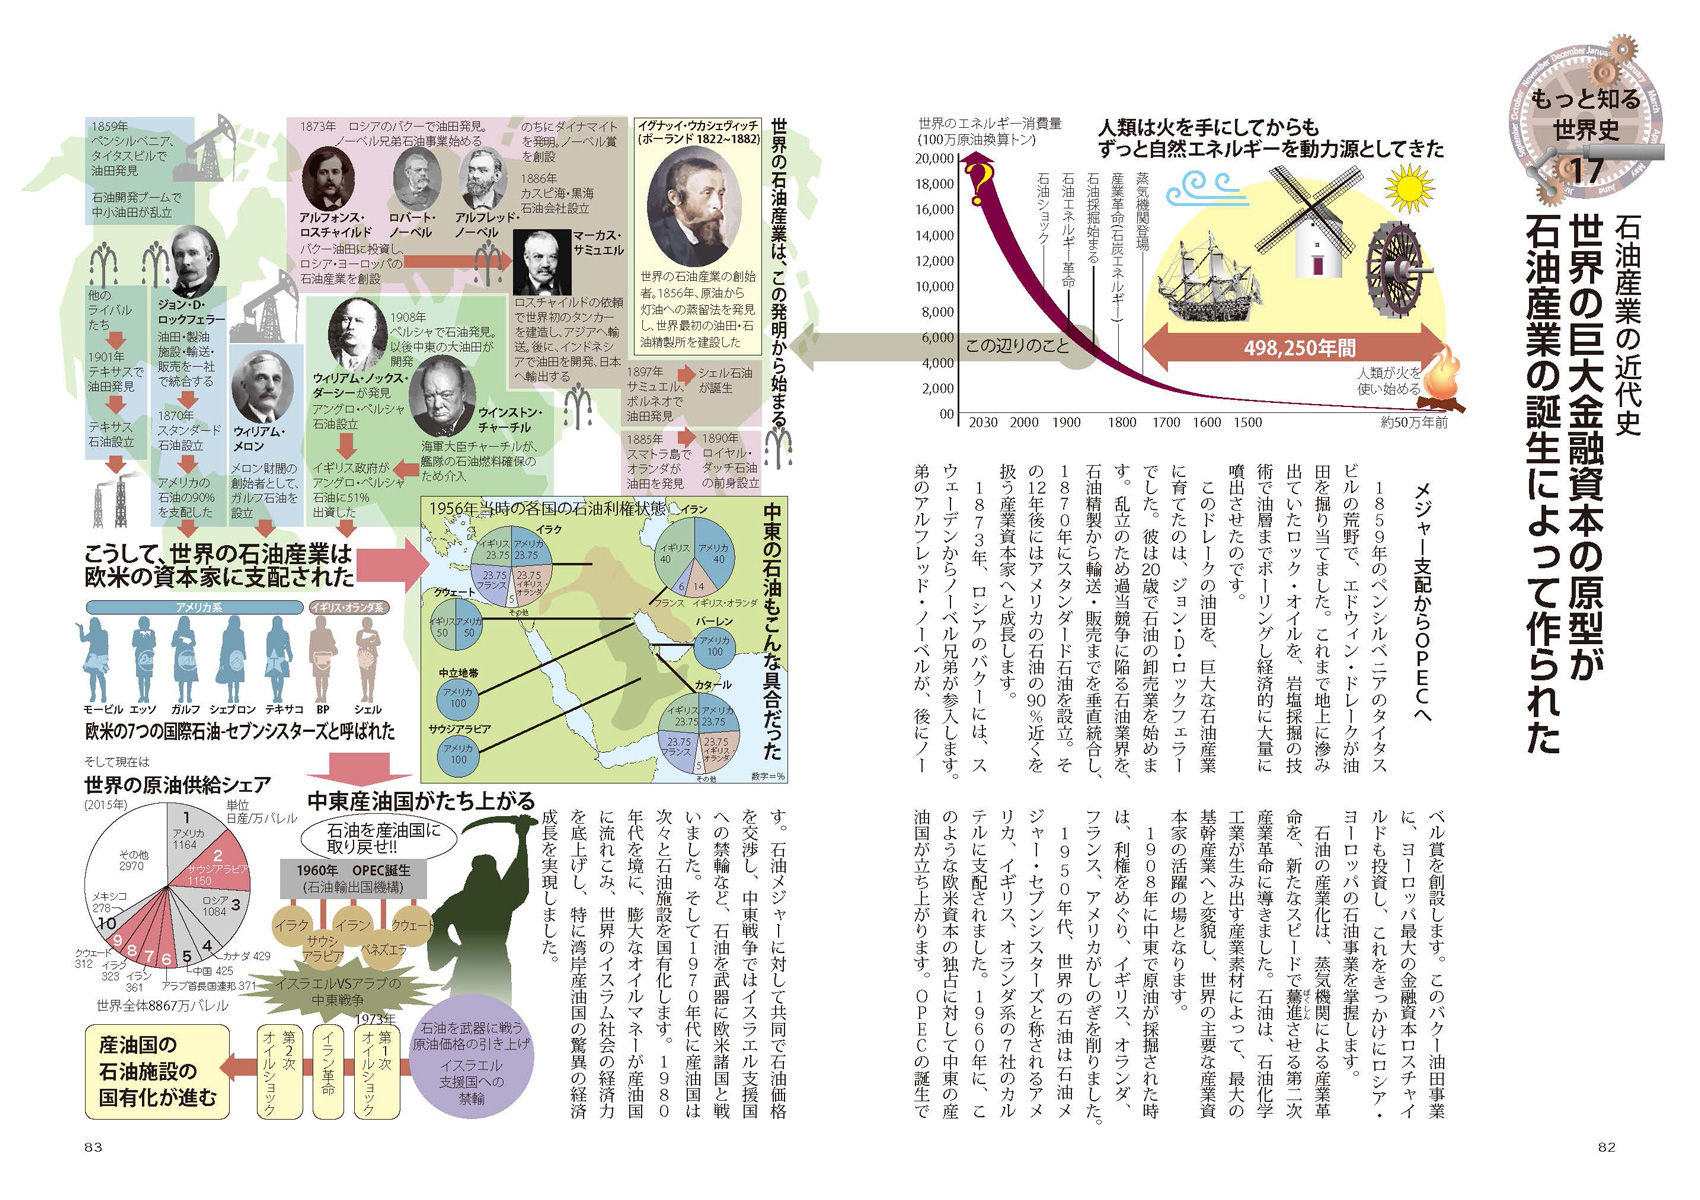 『図解でわかる 14歳から知る日本戦後政治史』ページサンプル9